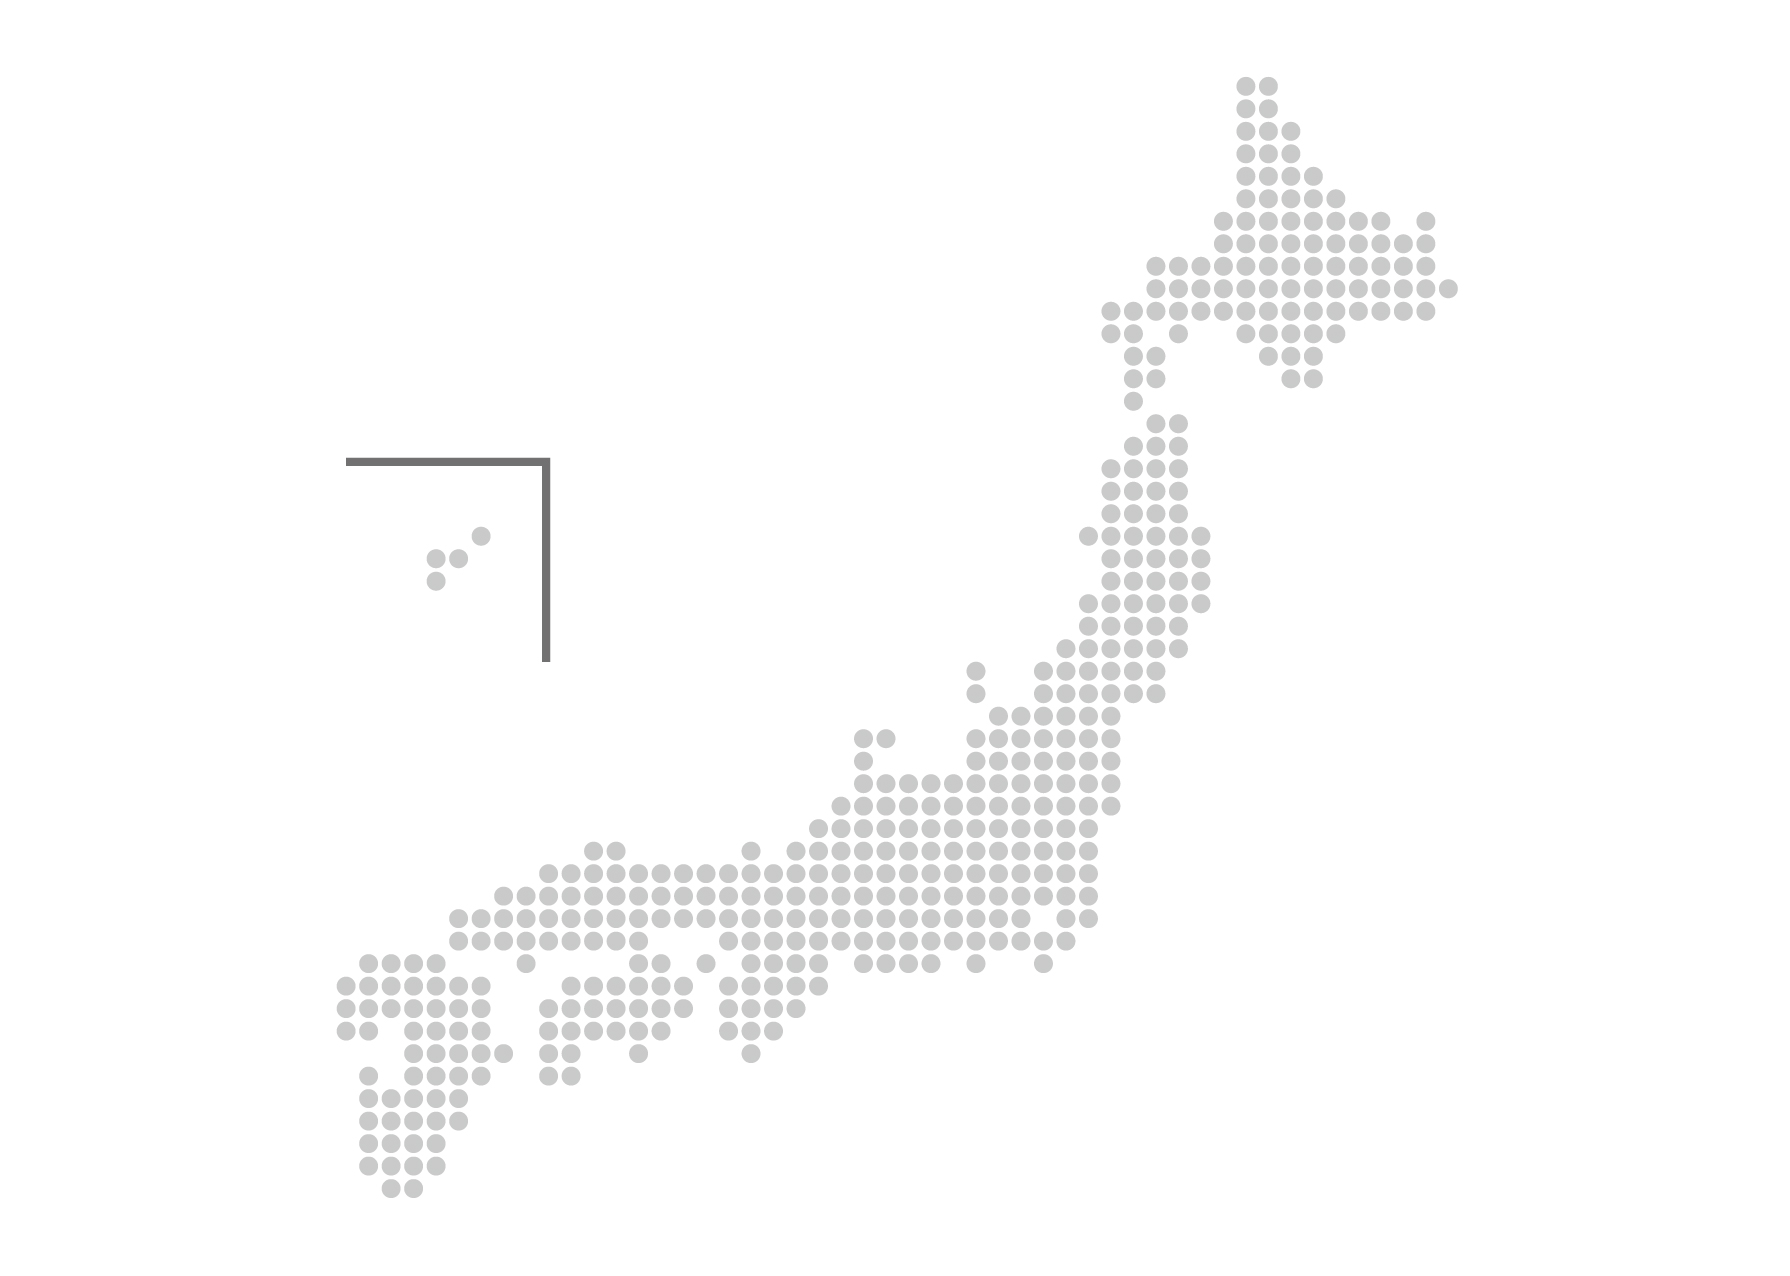 日本地図無料フリーイラスト 日本語 都道府県名あり デフォルメ 柄